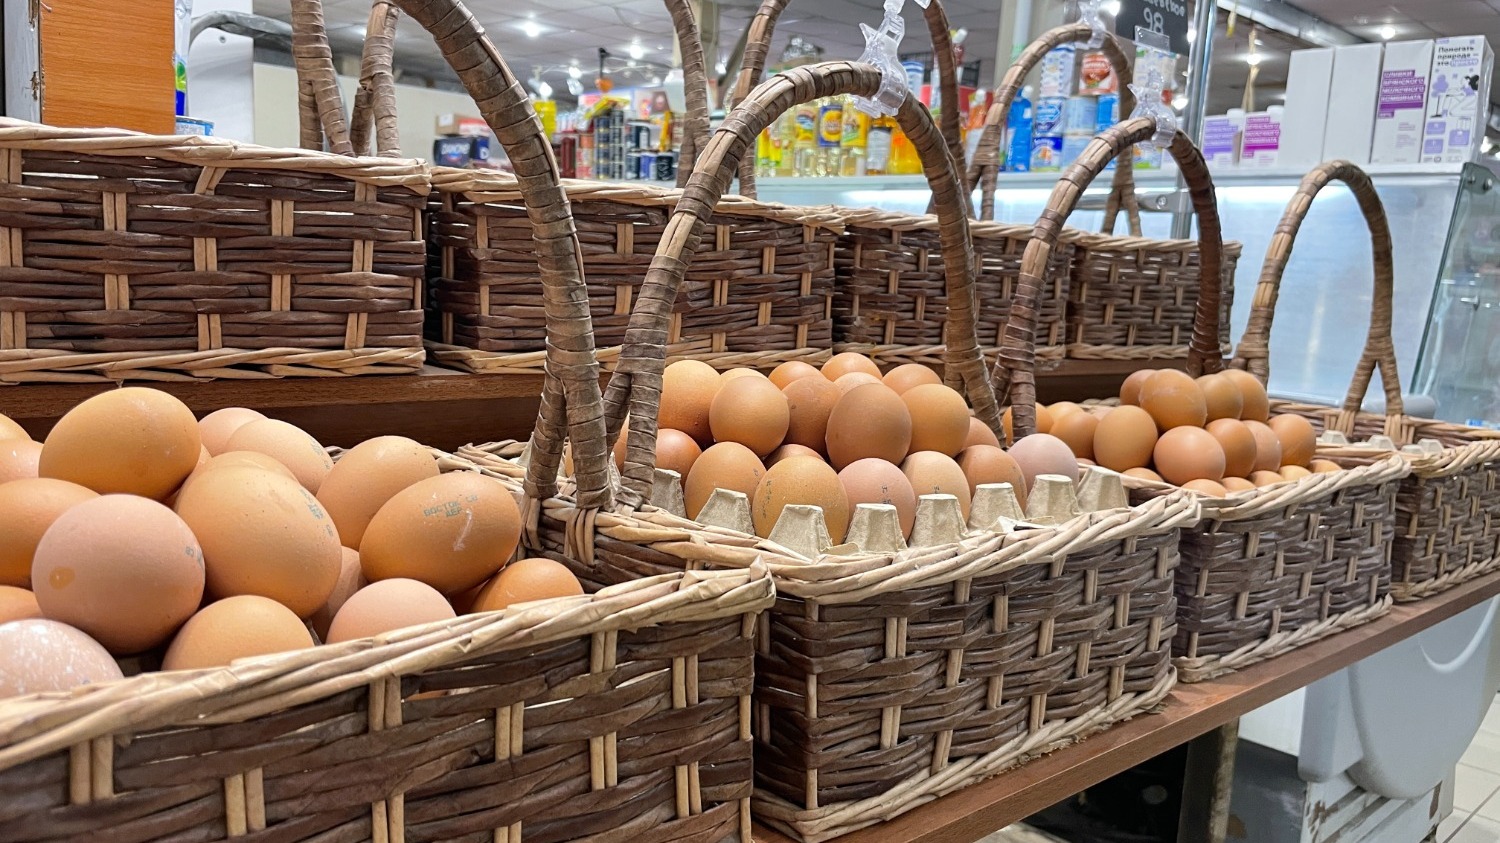 Домашние яйца - неизменный атрибут любого рынка в Волгограде